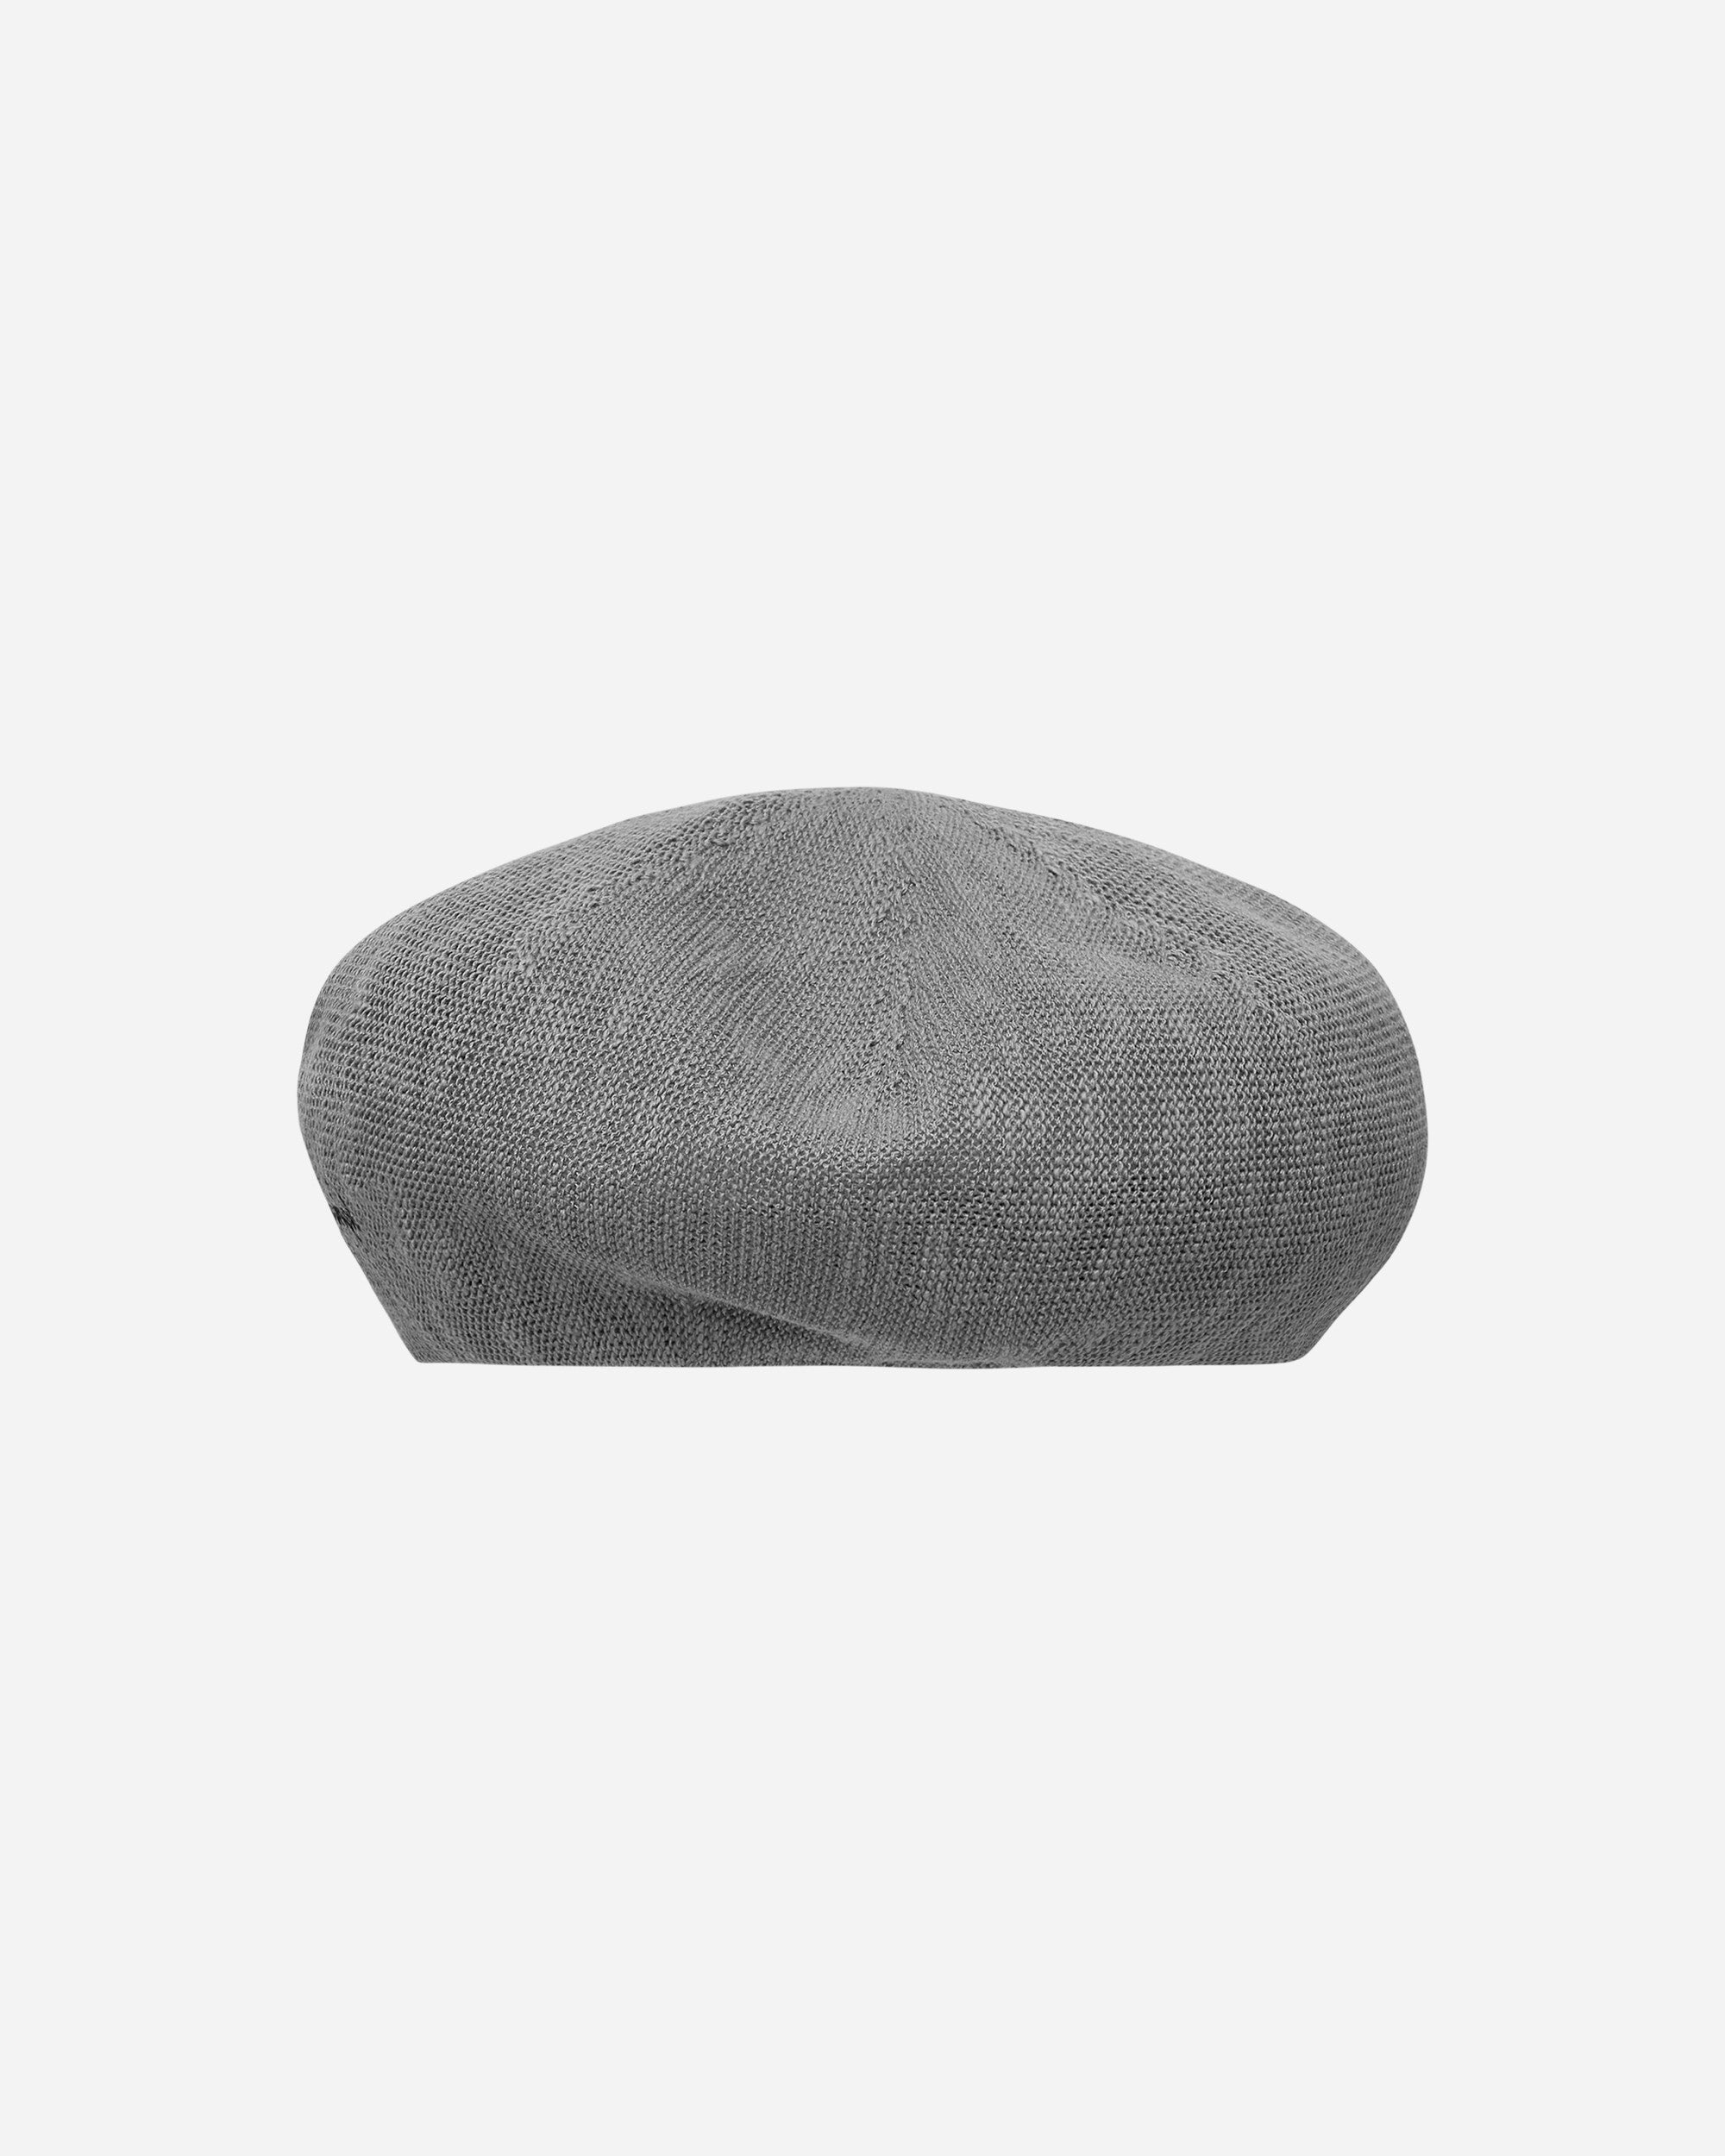 Neighborhood Summer Beret Grey Hats Beanies 24111NH-HT01 GY